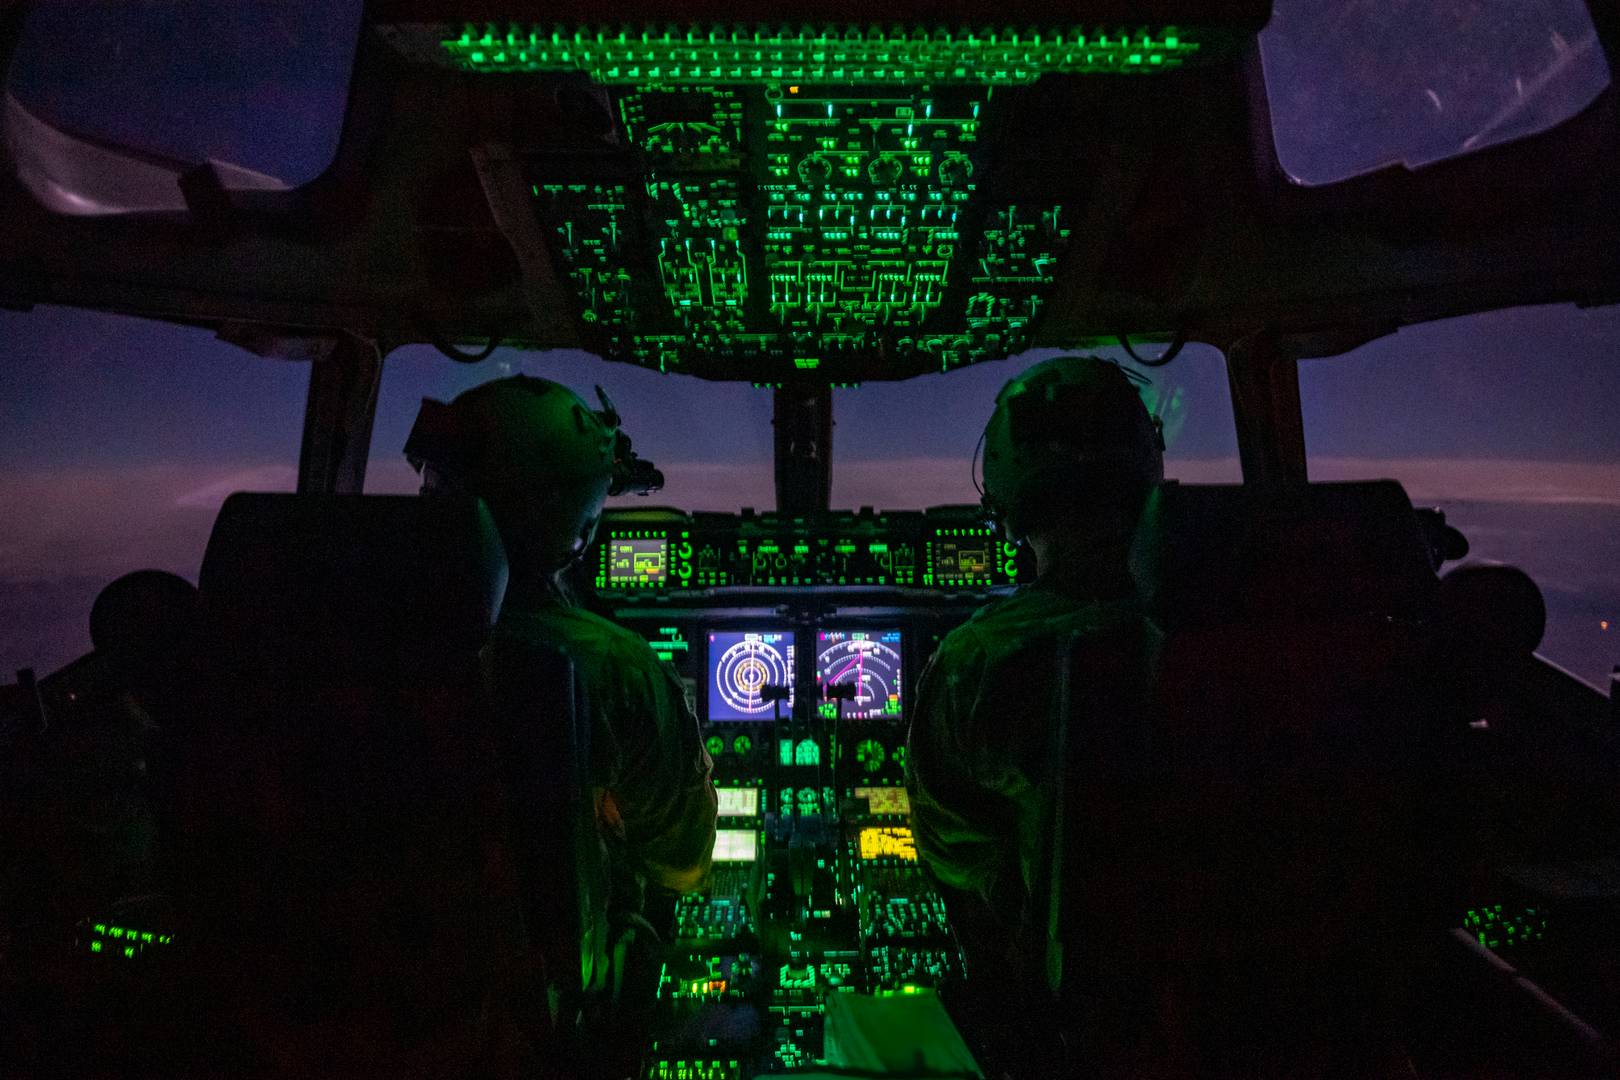 Члены экипажа C-17 Globemaster III ВВС США во время грузовой транспортной операции в зоне ответственности Центрального командования США